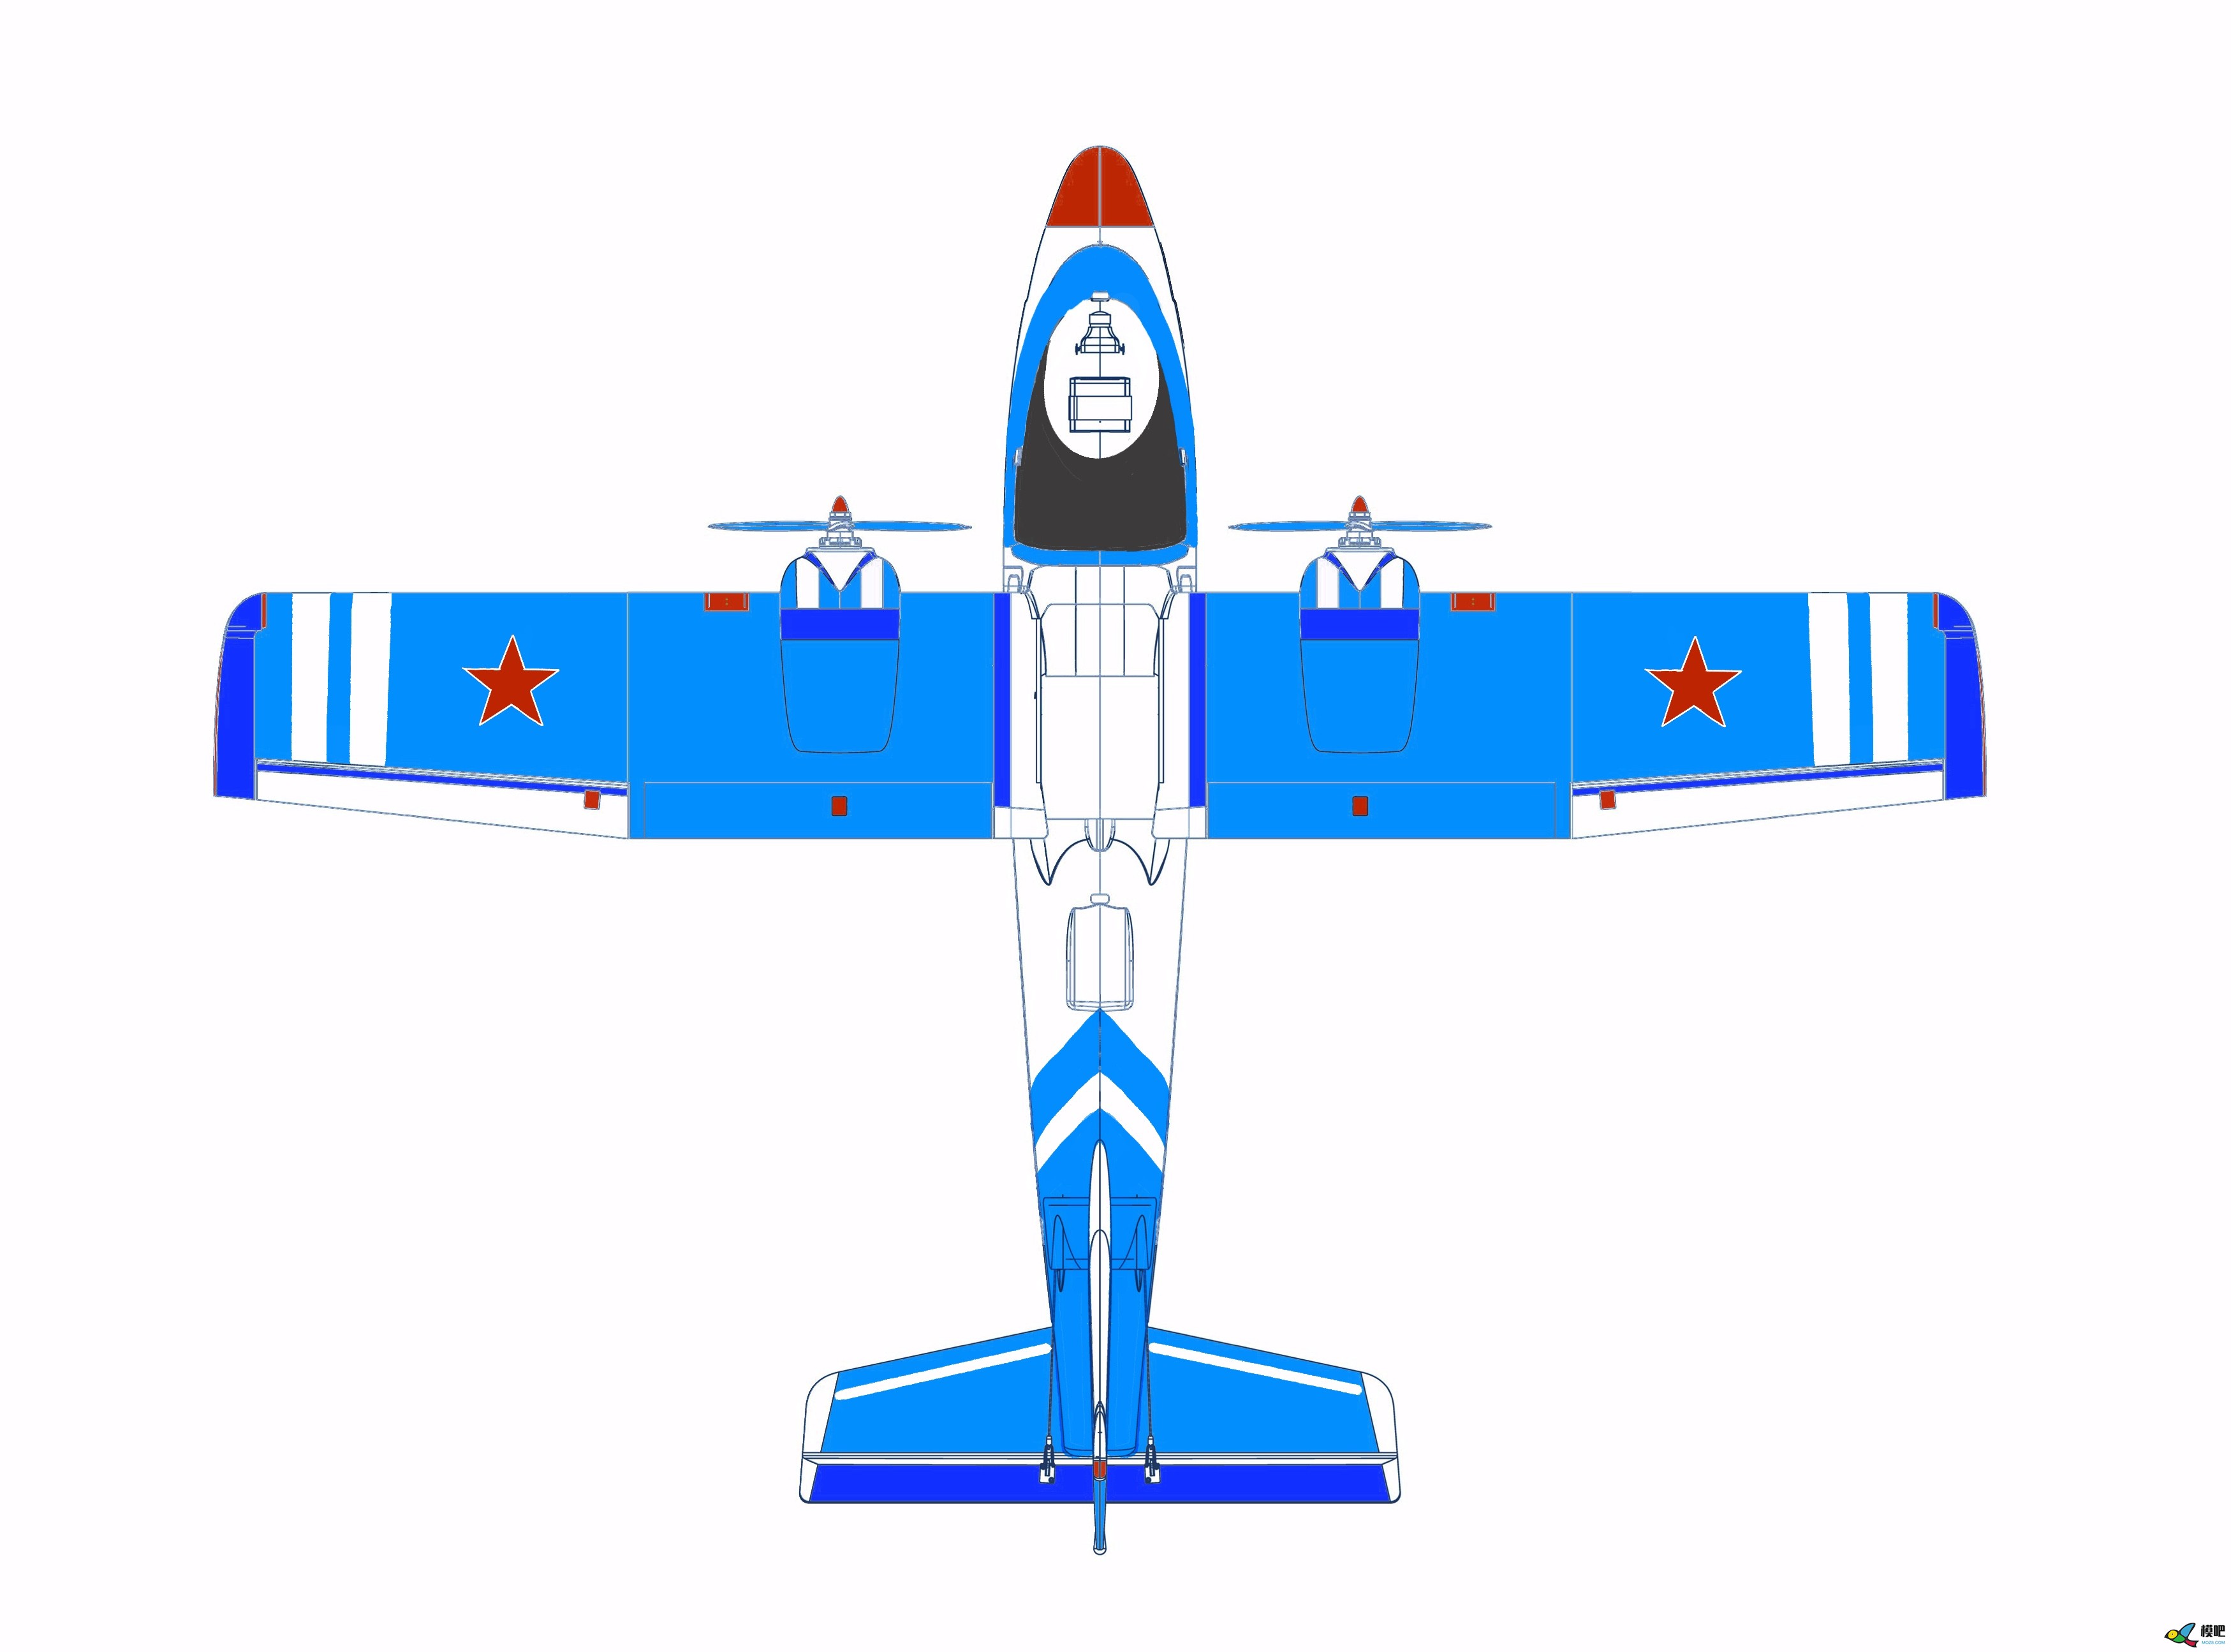 2020年第七期免费送模型：中航电Binary班纳瑞FPV飞机涂装大赛  作者:飞舞天水间 2199 